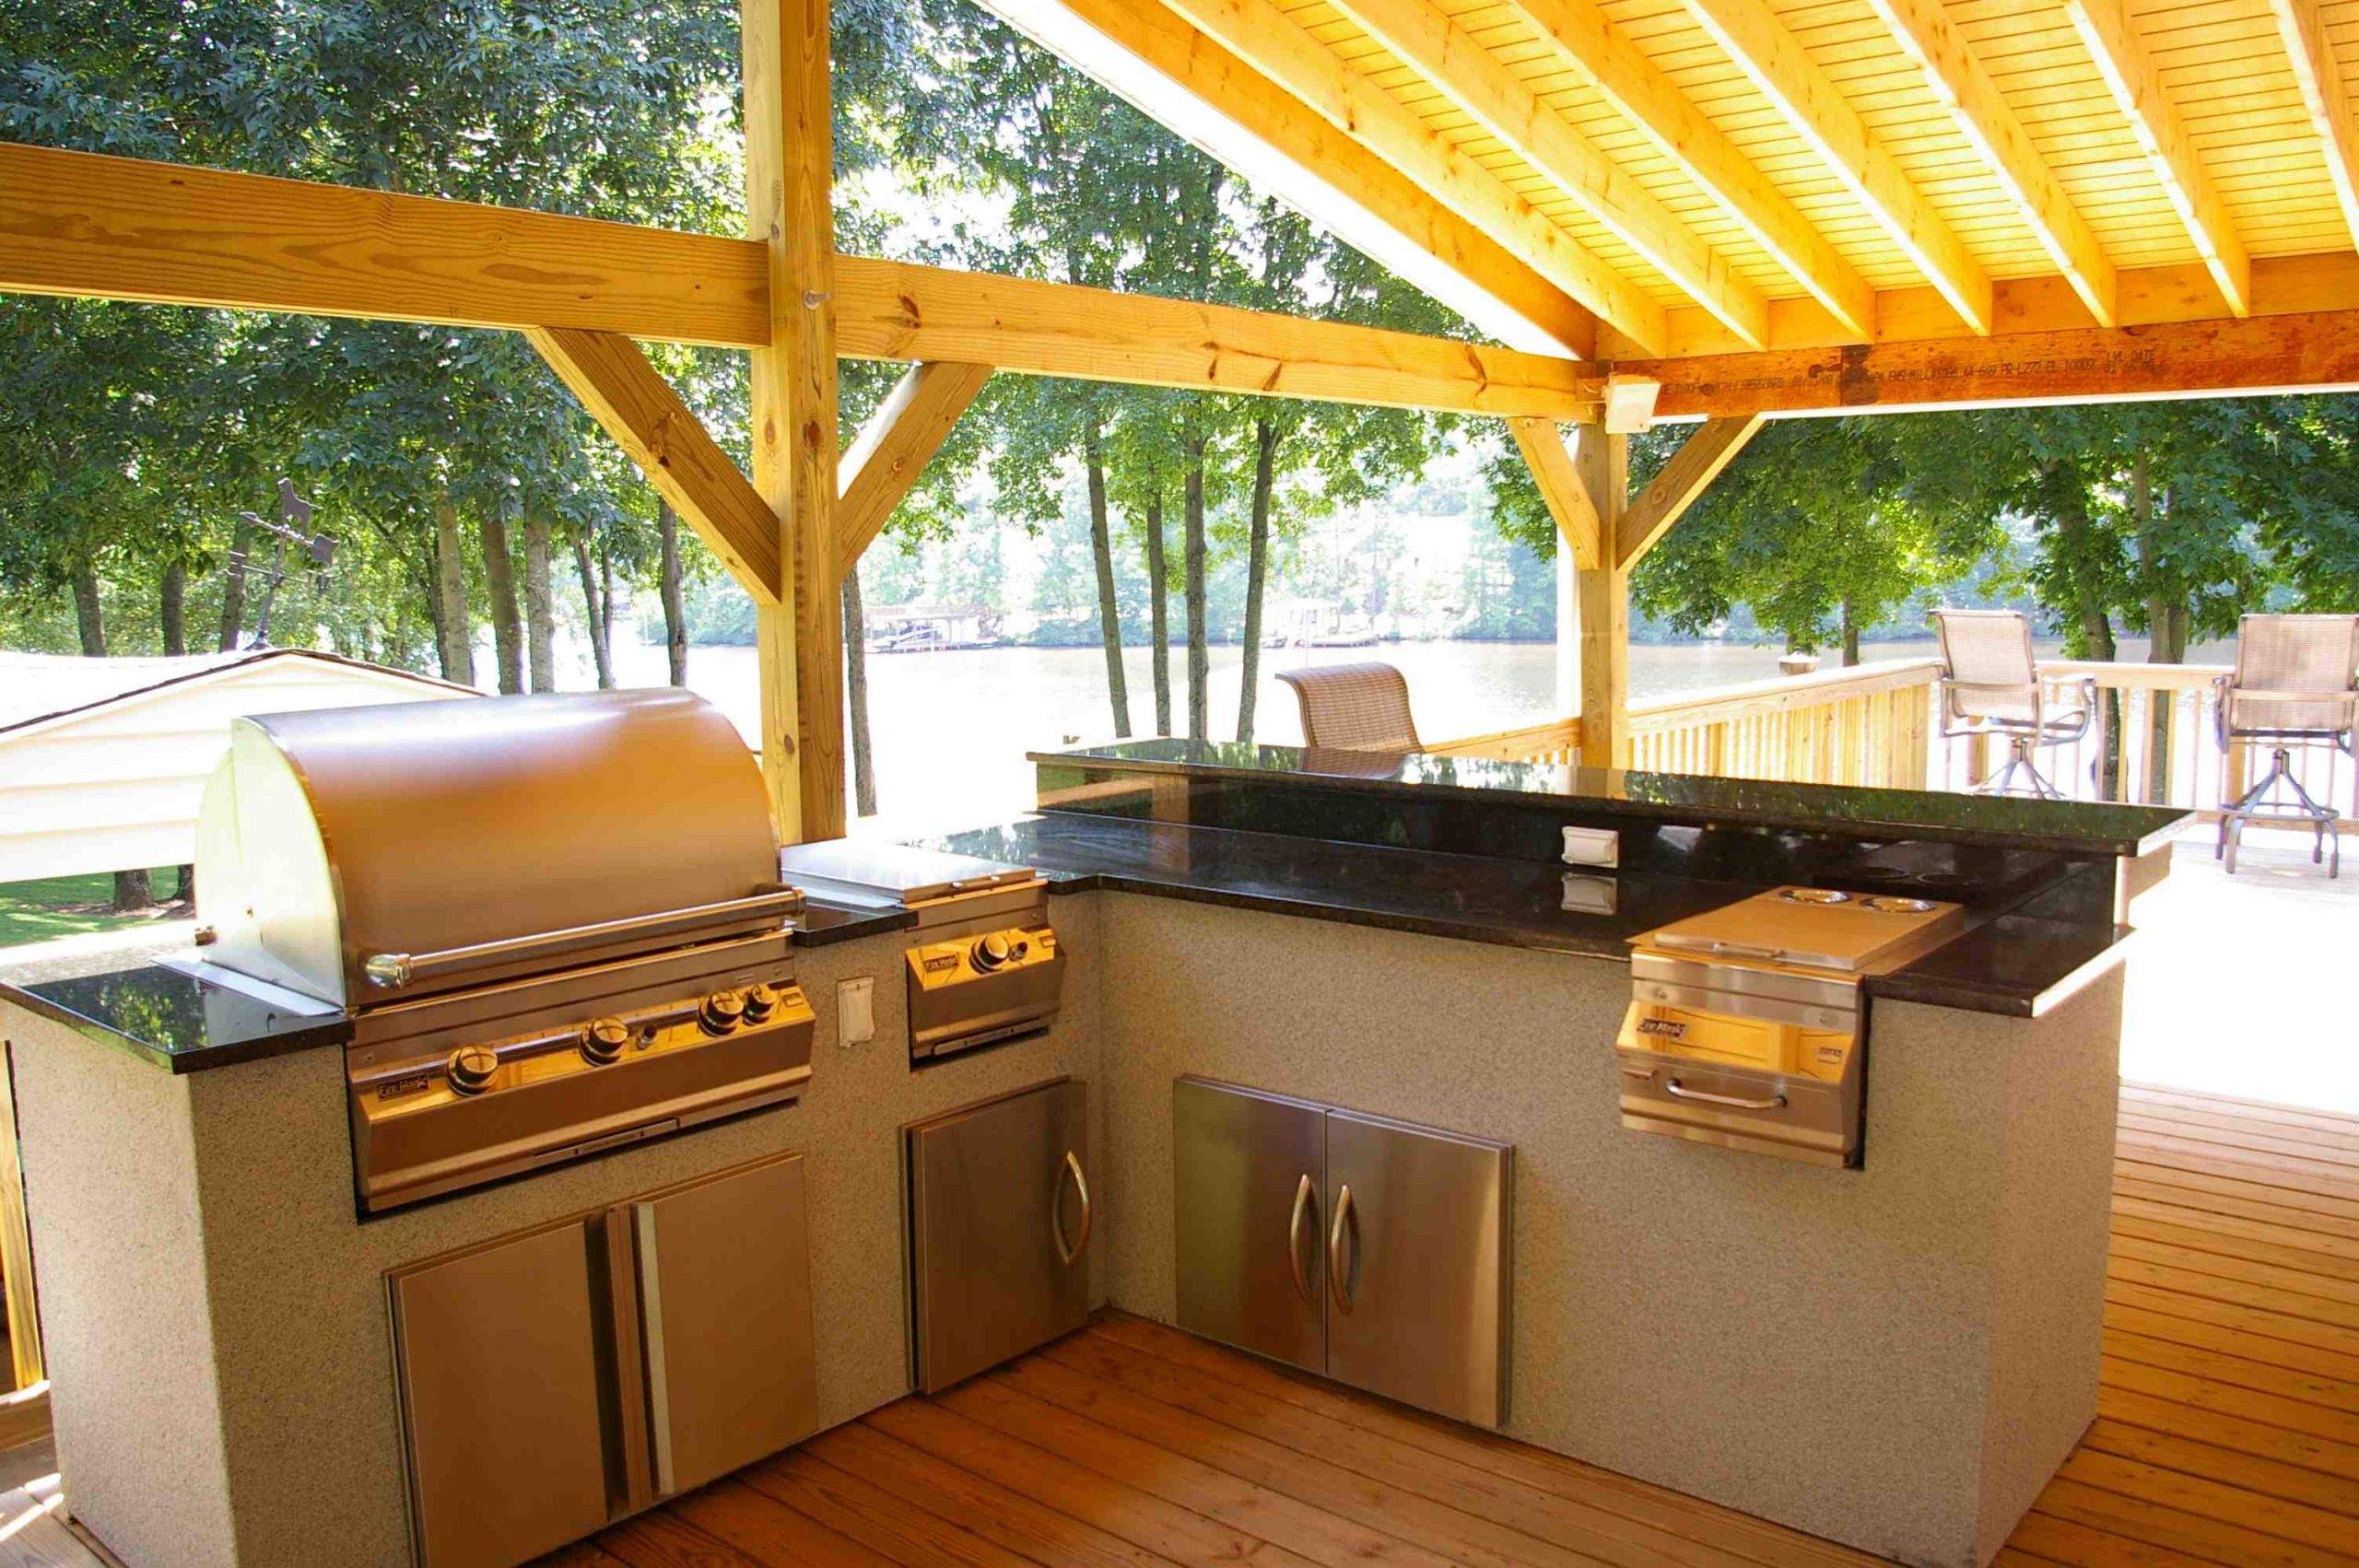 Outdoor Kitchens Ideas
 Outdoor Kitchen Design How to Design Outdoor Kitchen